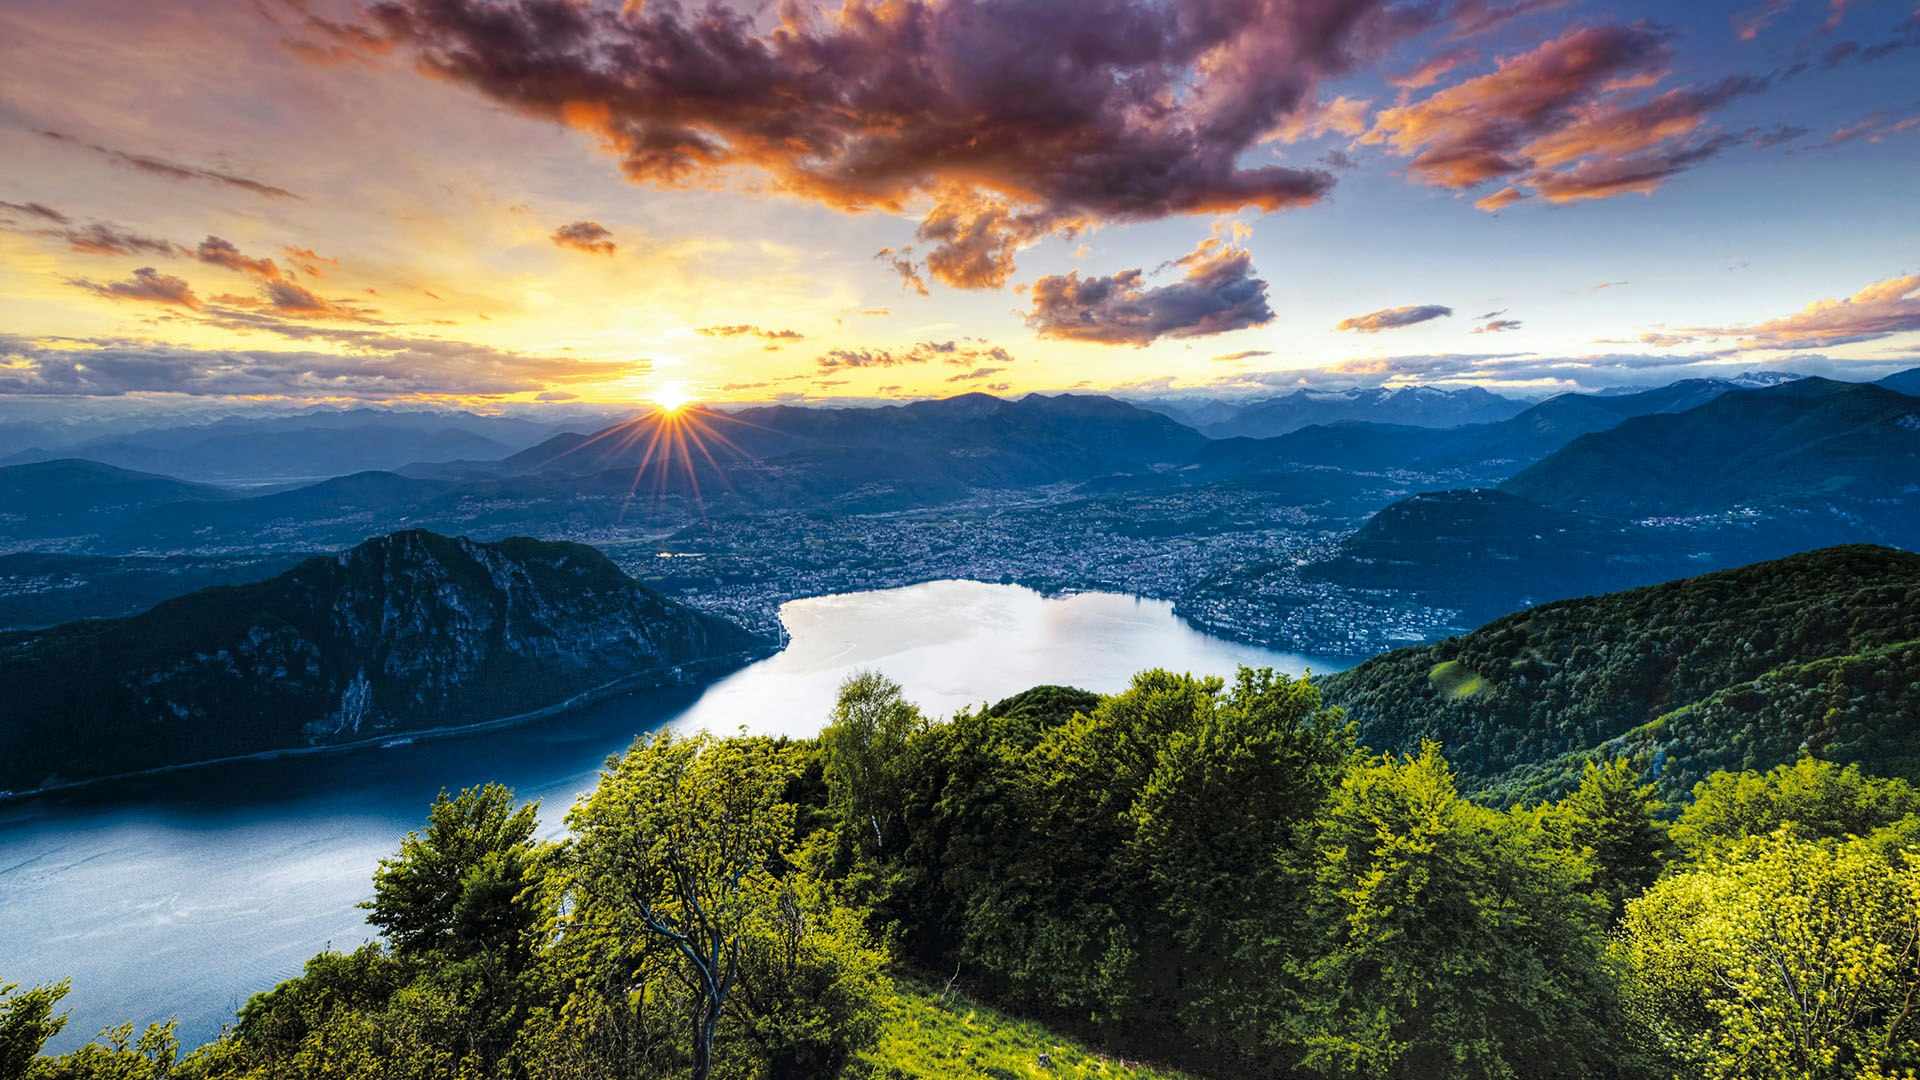 Sketchin Case Study - ERSL Ente Regionale per lo Sviluppo del Luganese - Panorama del Lago di Lugano, Svizzera